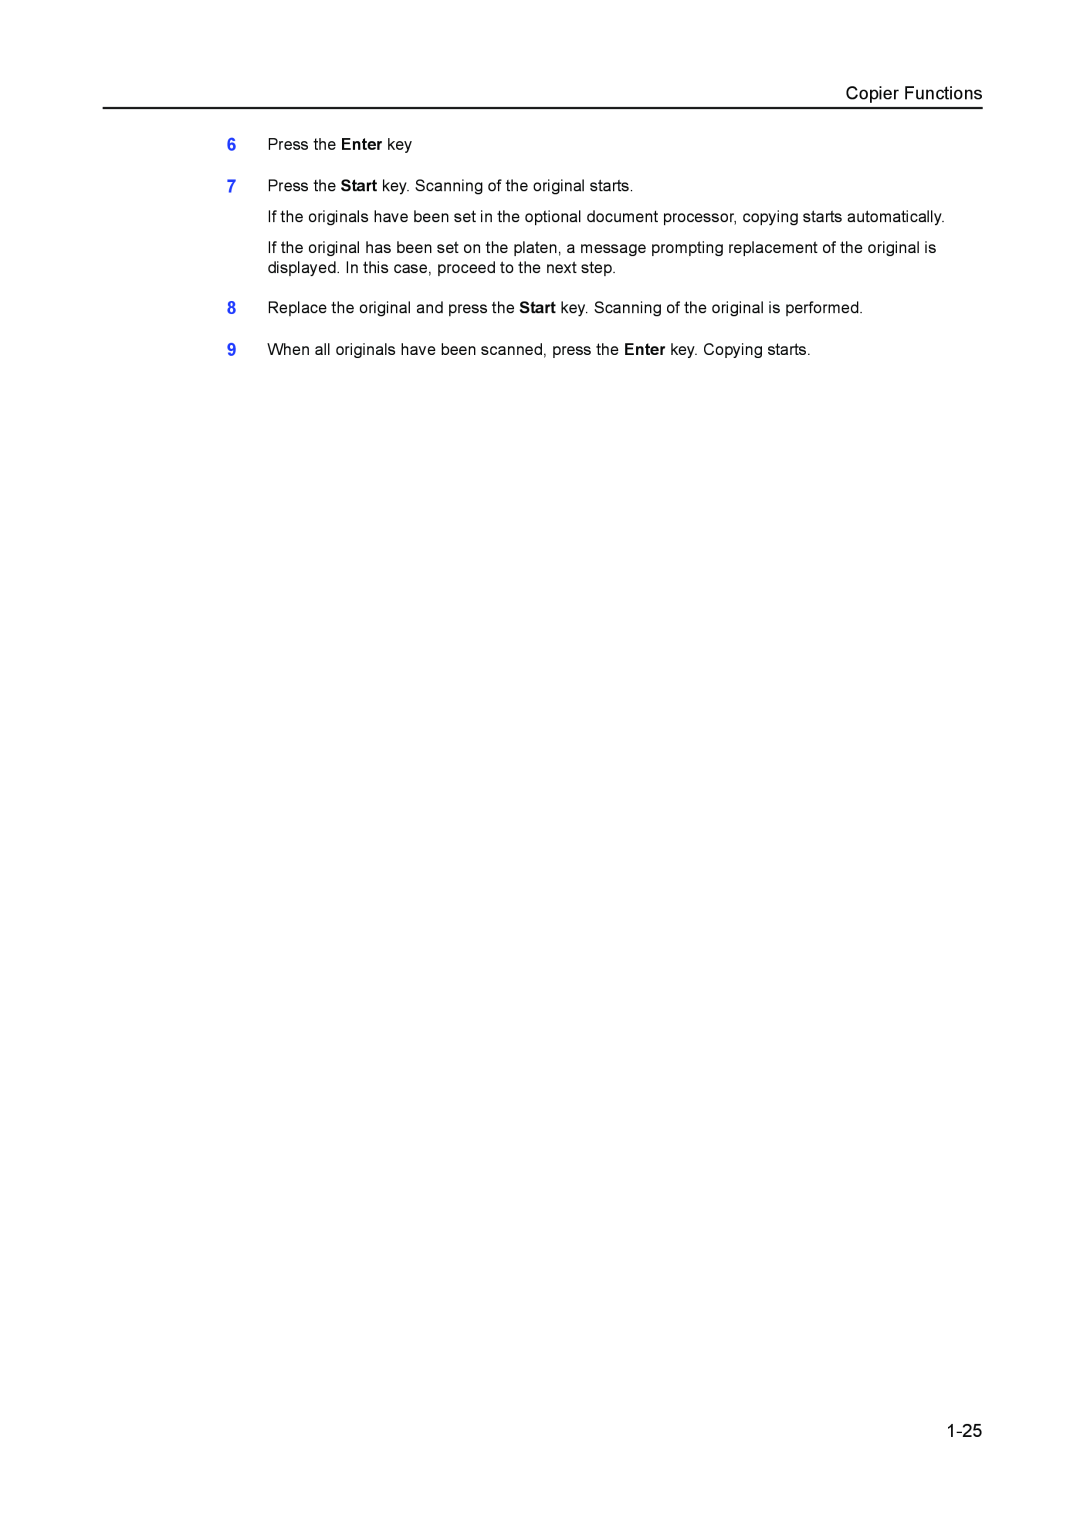 Kyocera 2050, 1650, 2550 manual 1-25, Copier Functions 